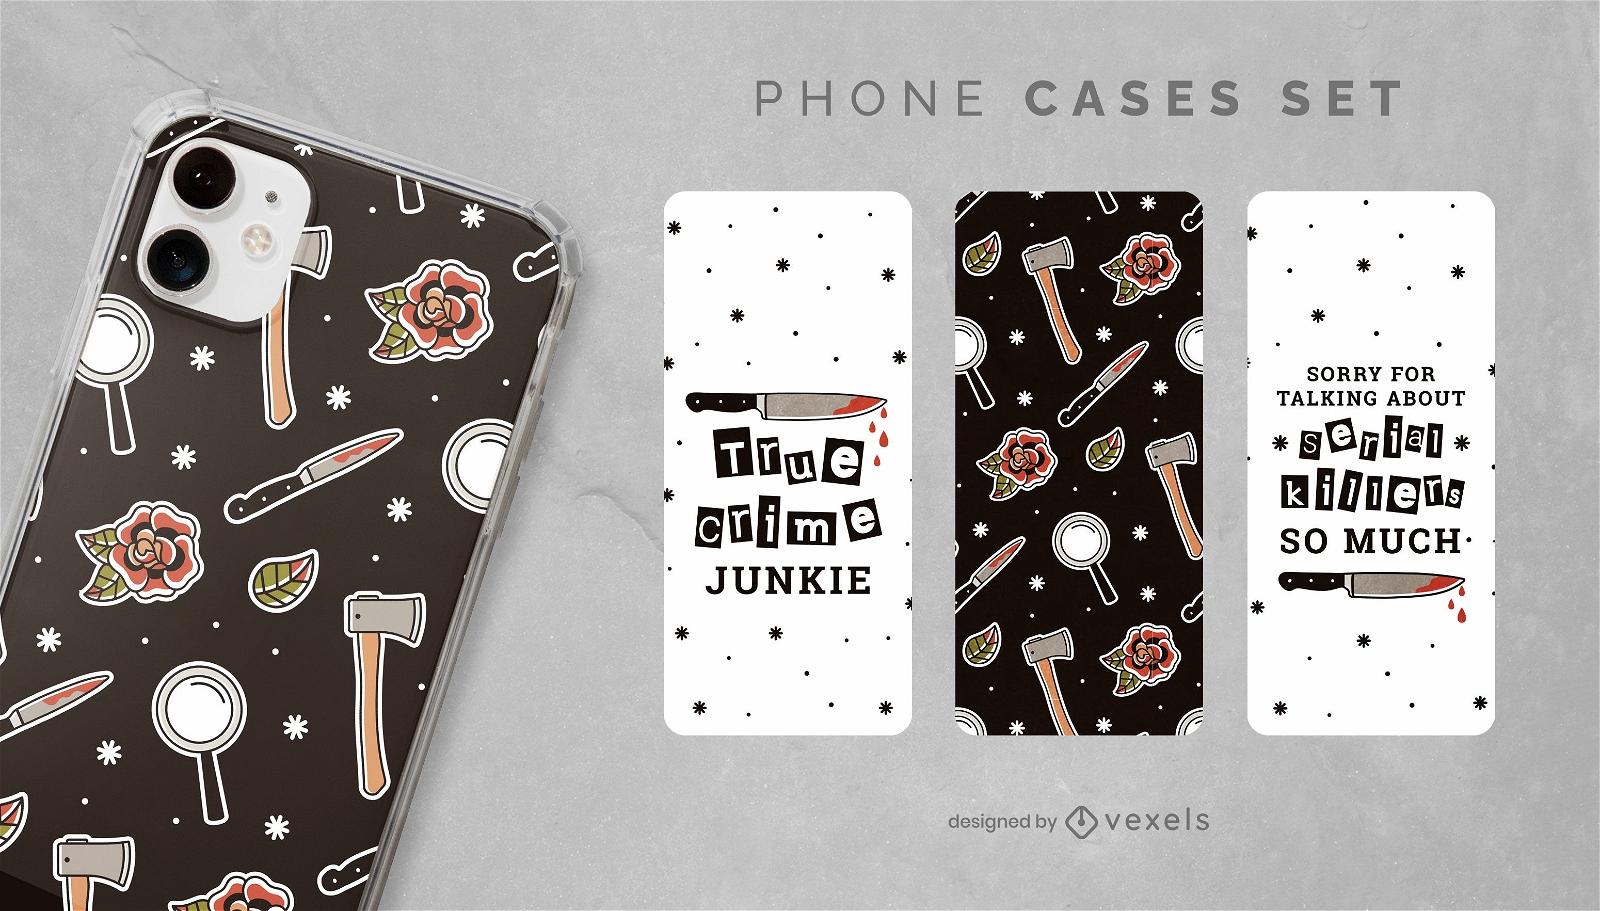 True Crime phone cases set